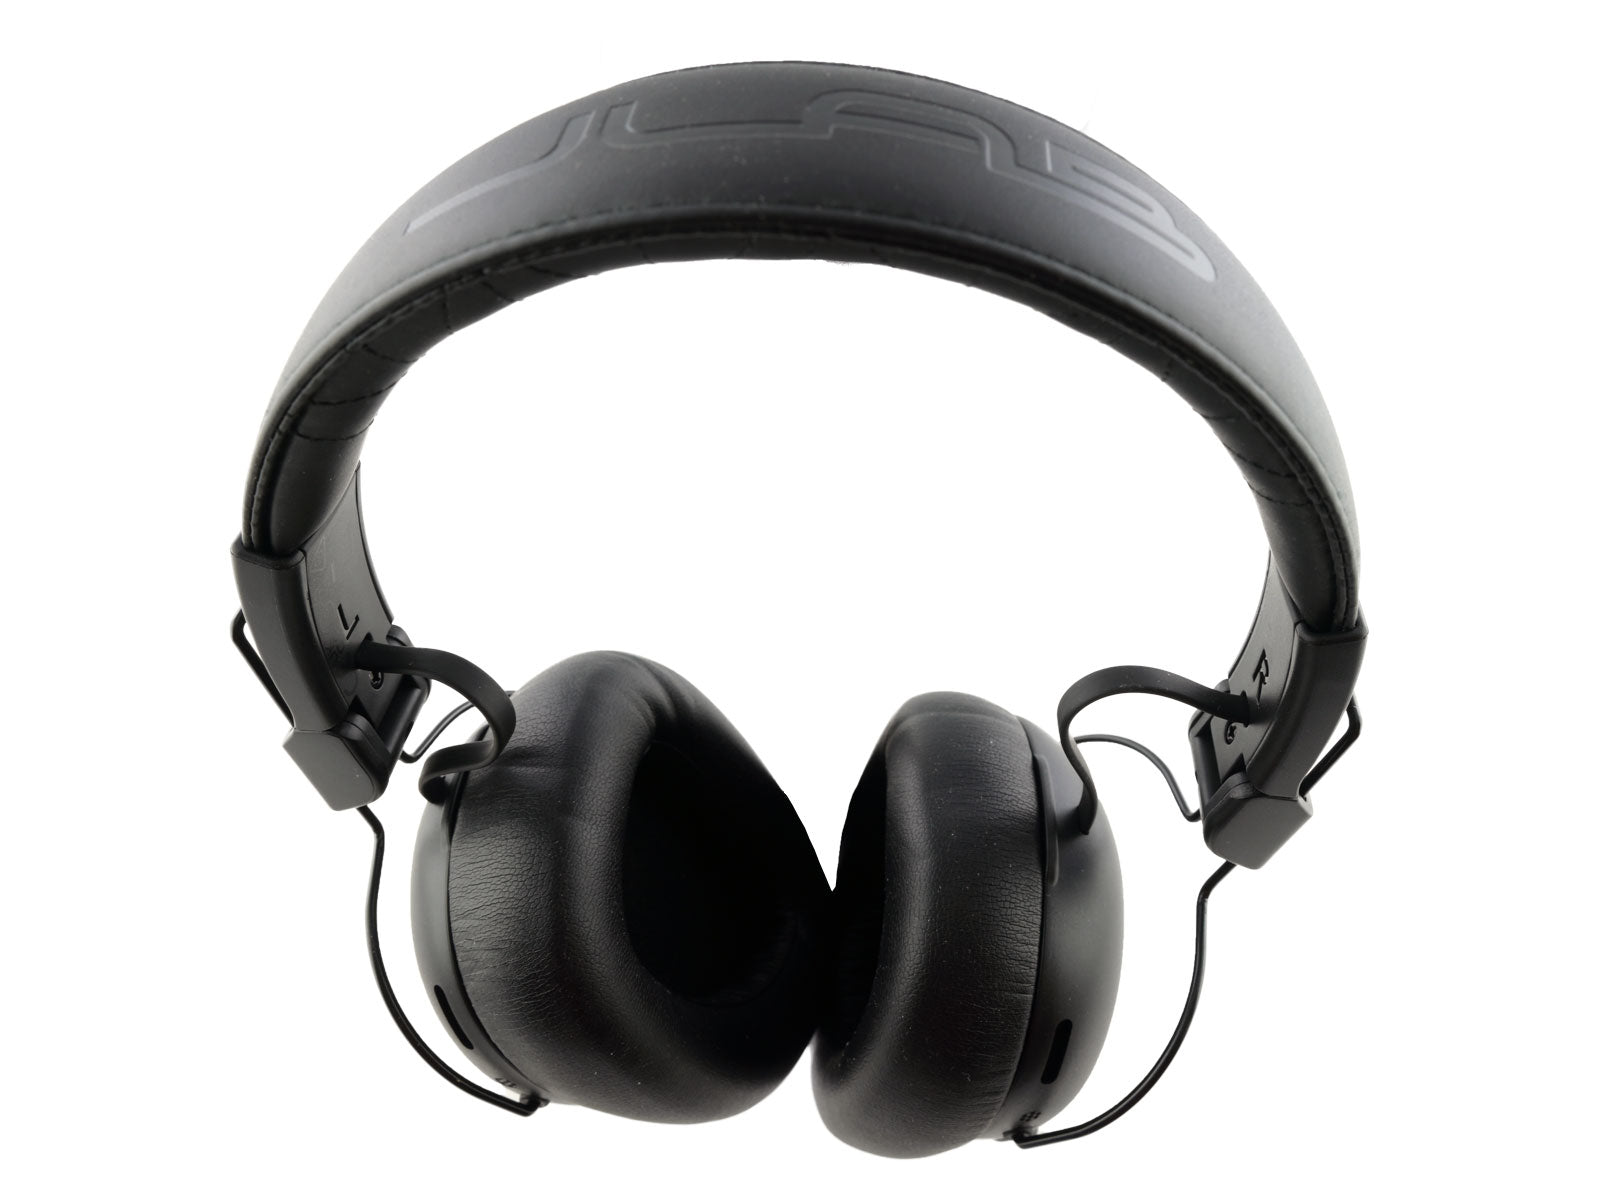 JLab Studio Pro ANC Wireless Over-Ear Kopfhörer Schwarze Over-Ear-Kopfhörer auf einer weißen Oberfläche. Die Kopfhörer verfügen über dicke, gepolsterte Ohrmuscheln und einen verstellbaren Kopfbügel, wobei jeweils ein Kabel die  Ohrmuscheln mit dem Bügel verbindet.